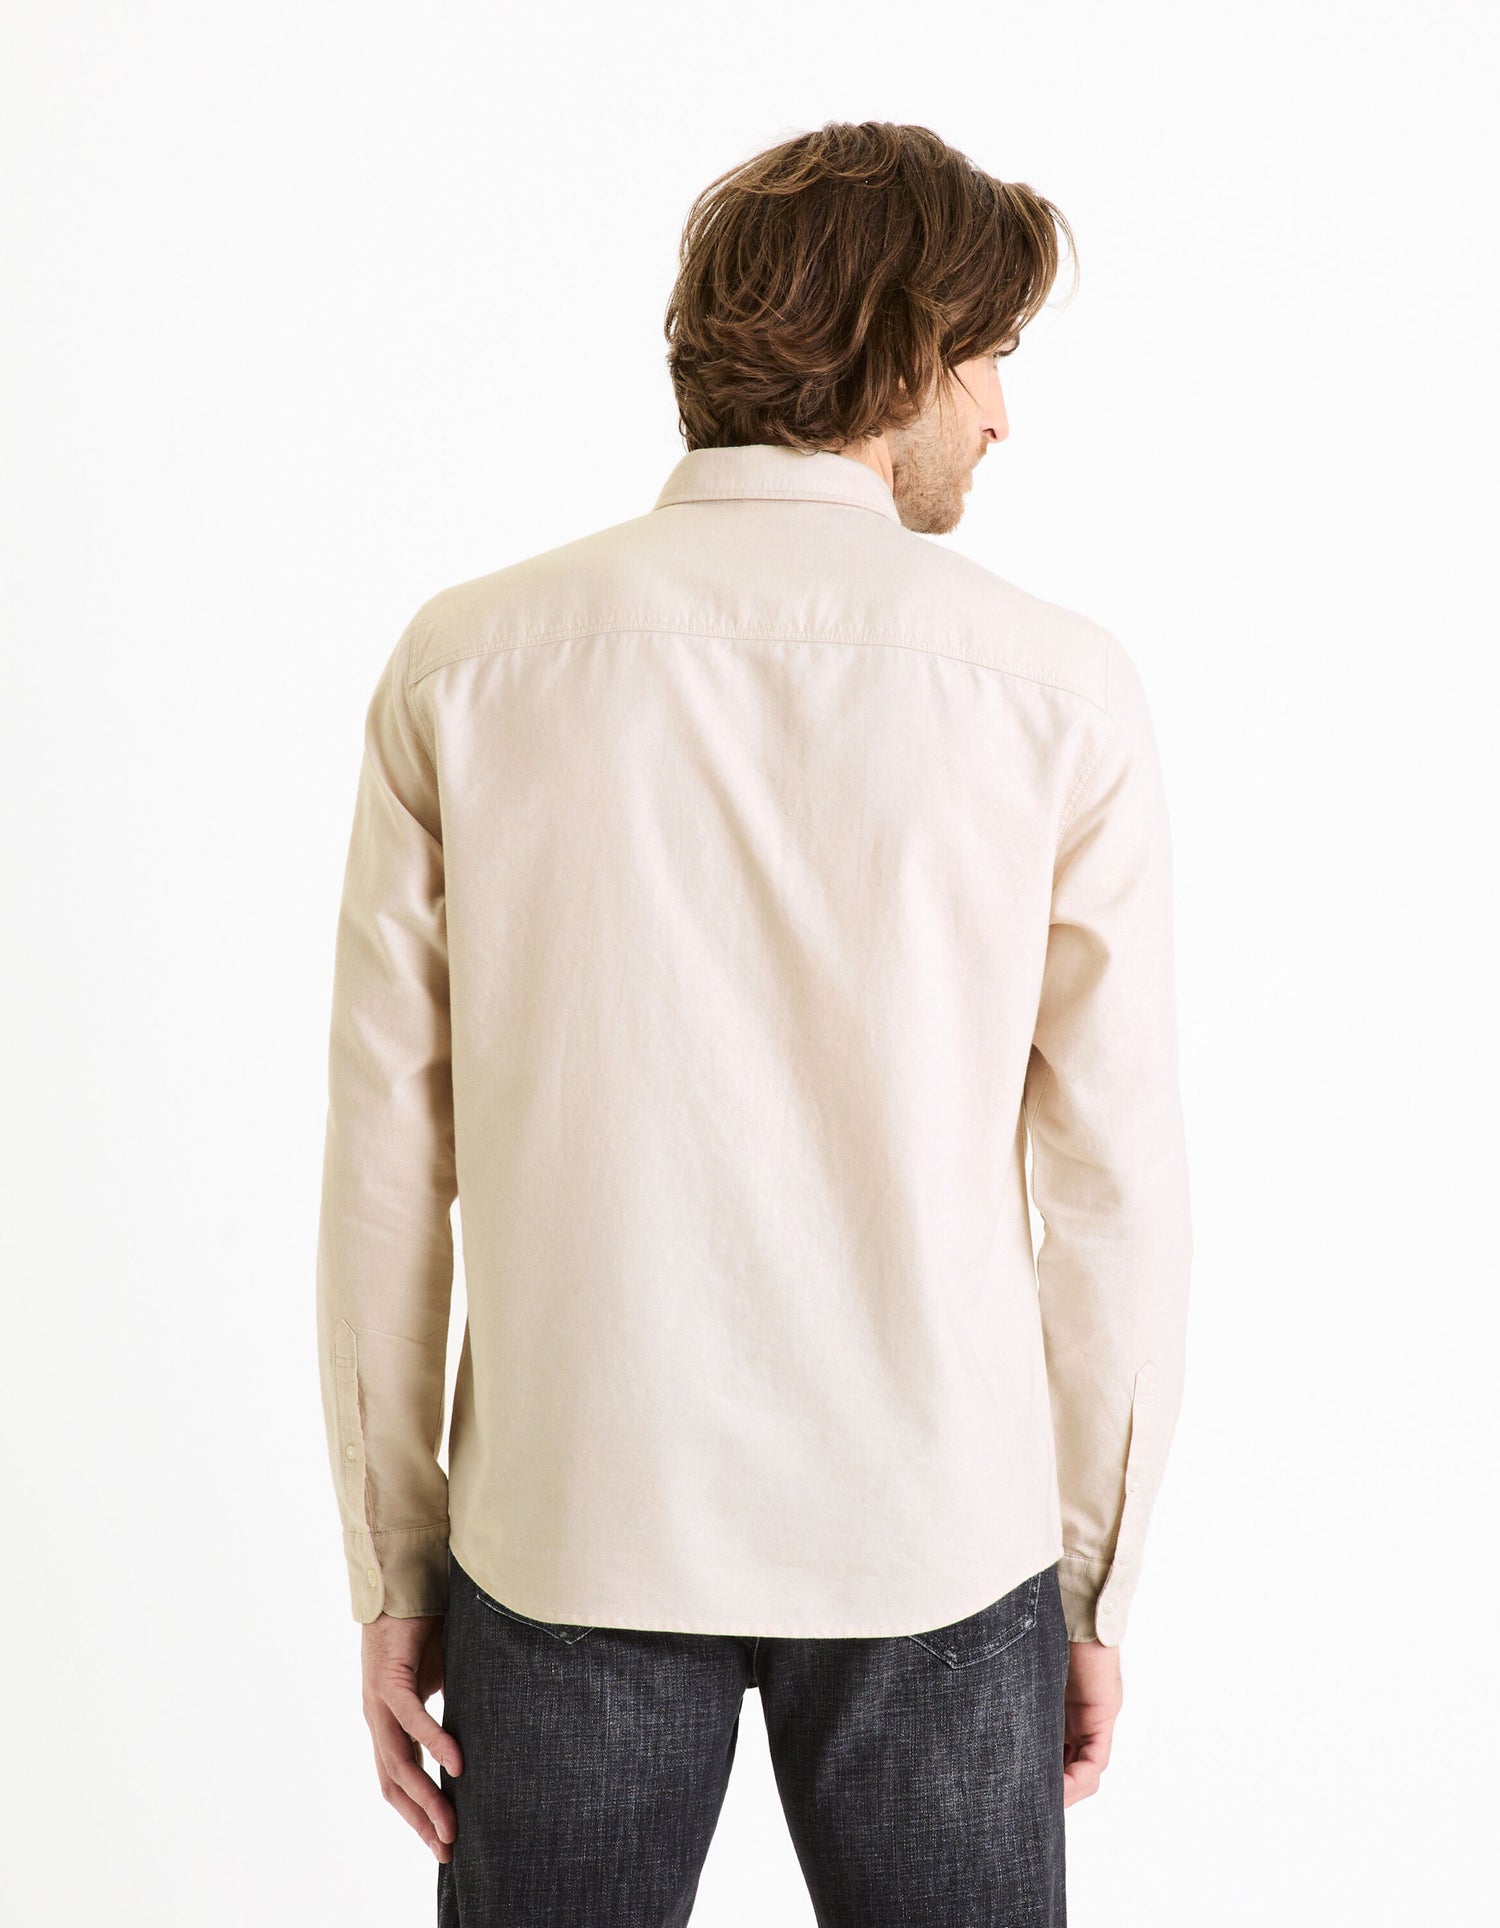 Regular Shirt 100% Oxford Cotton - Beige_DAXFORD_BEIGE_04